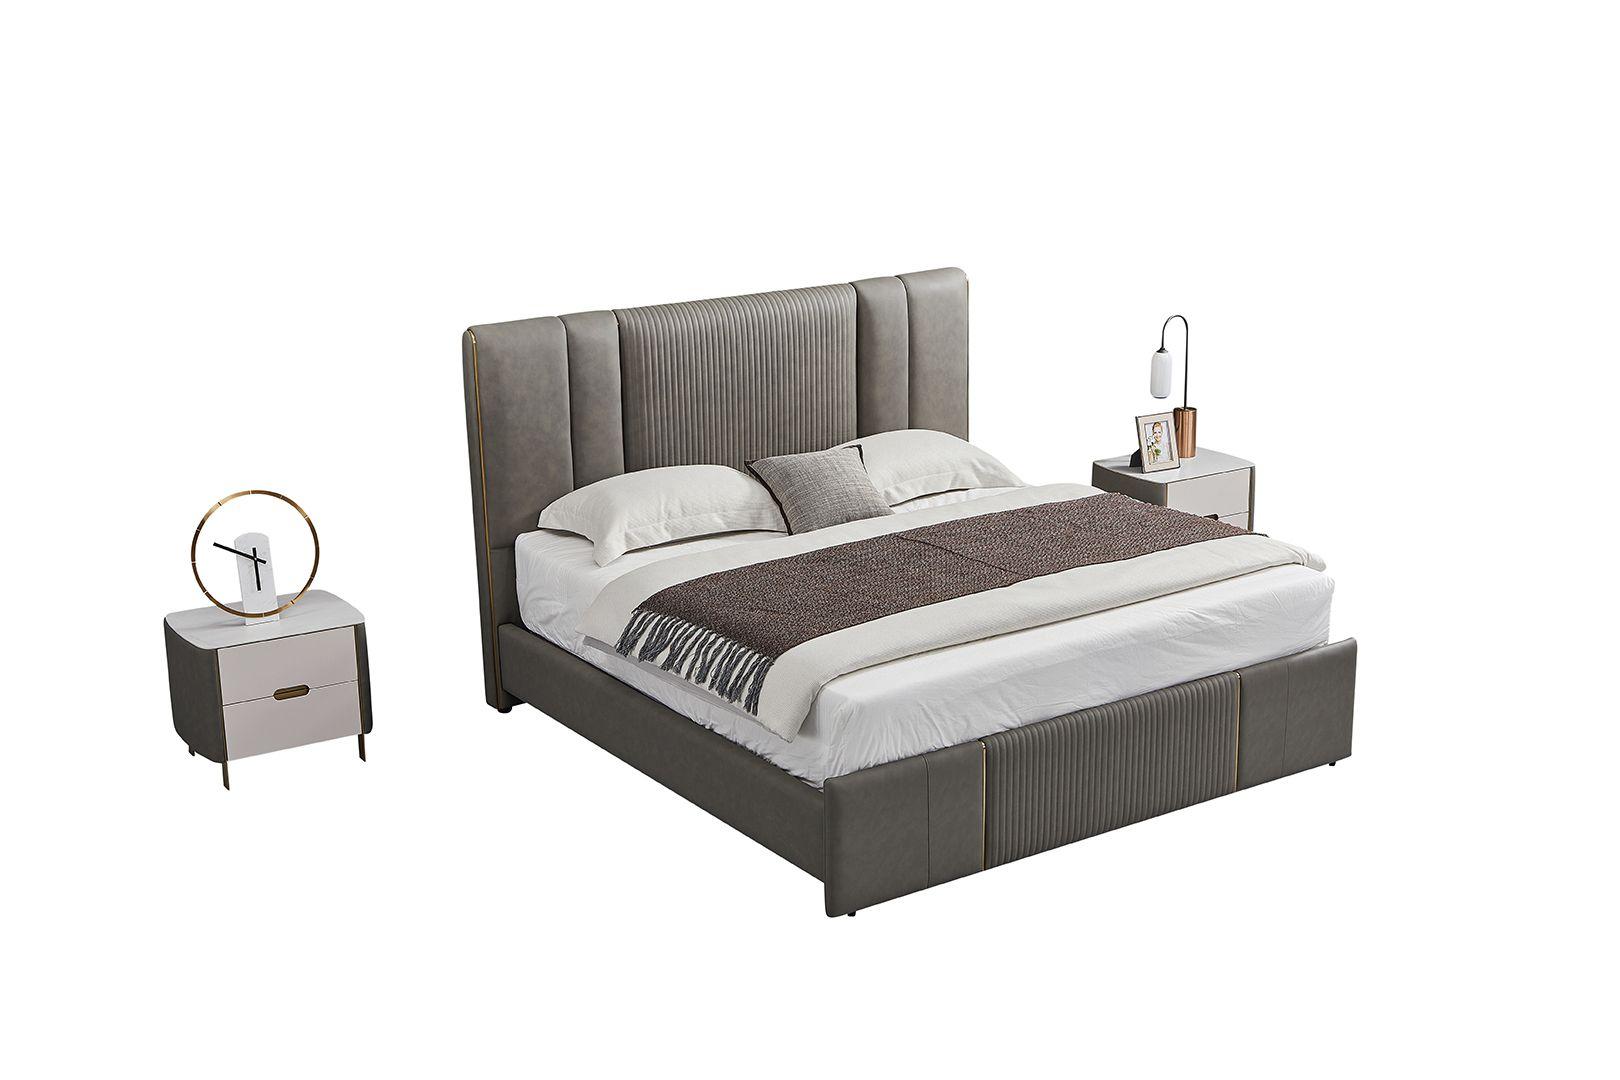 Contemporary, Modern Platform Bedroom Set B-Y2009-EK / NS-Y2009 B-Y2009-EK-3PC in Gray Genuine Leather